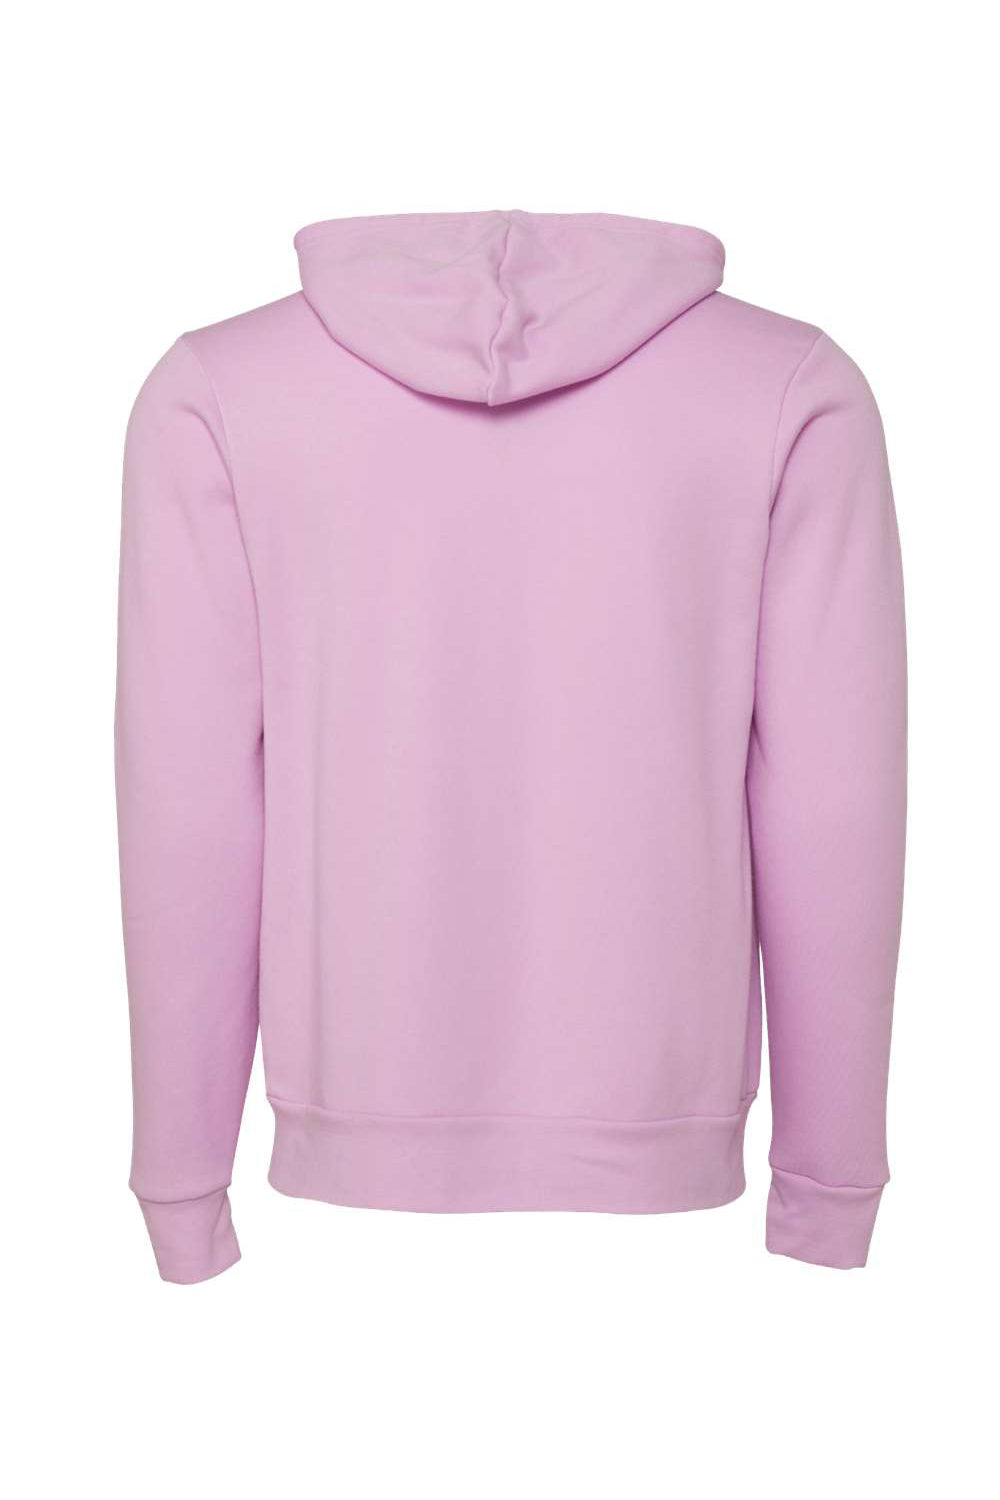 Bella + Canvas BC3739/3739 Mens Fleece Full Zip Hooded Sweatshirt Hoodie Lilac Flat Back